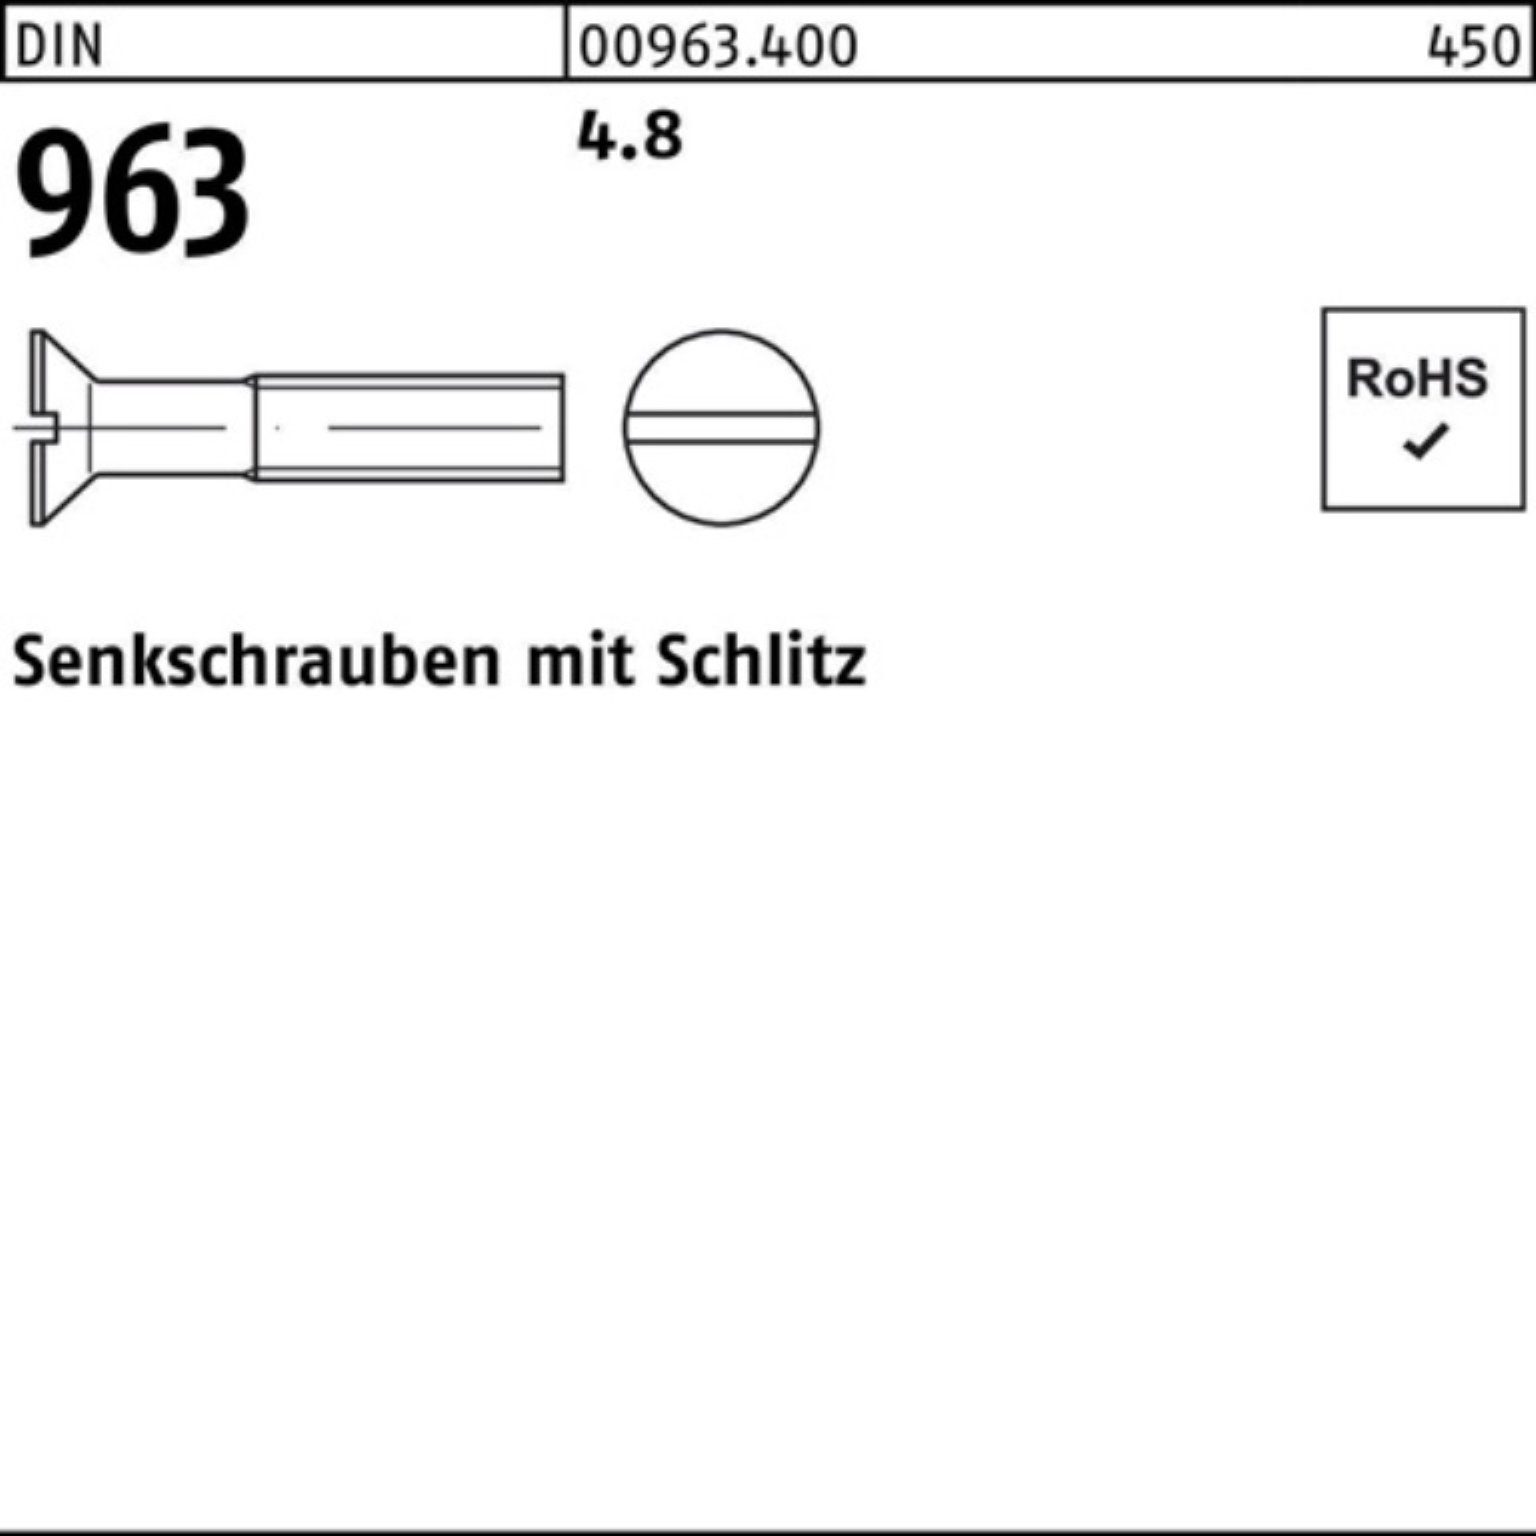 Senkschraube Pack M4x Stück 96 Reyher 16 4.8 DIN 2000er Schlitz 2000 Senkschraube DIN 963